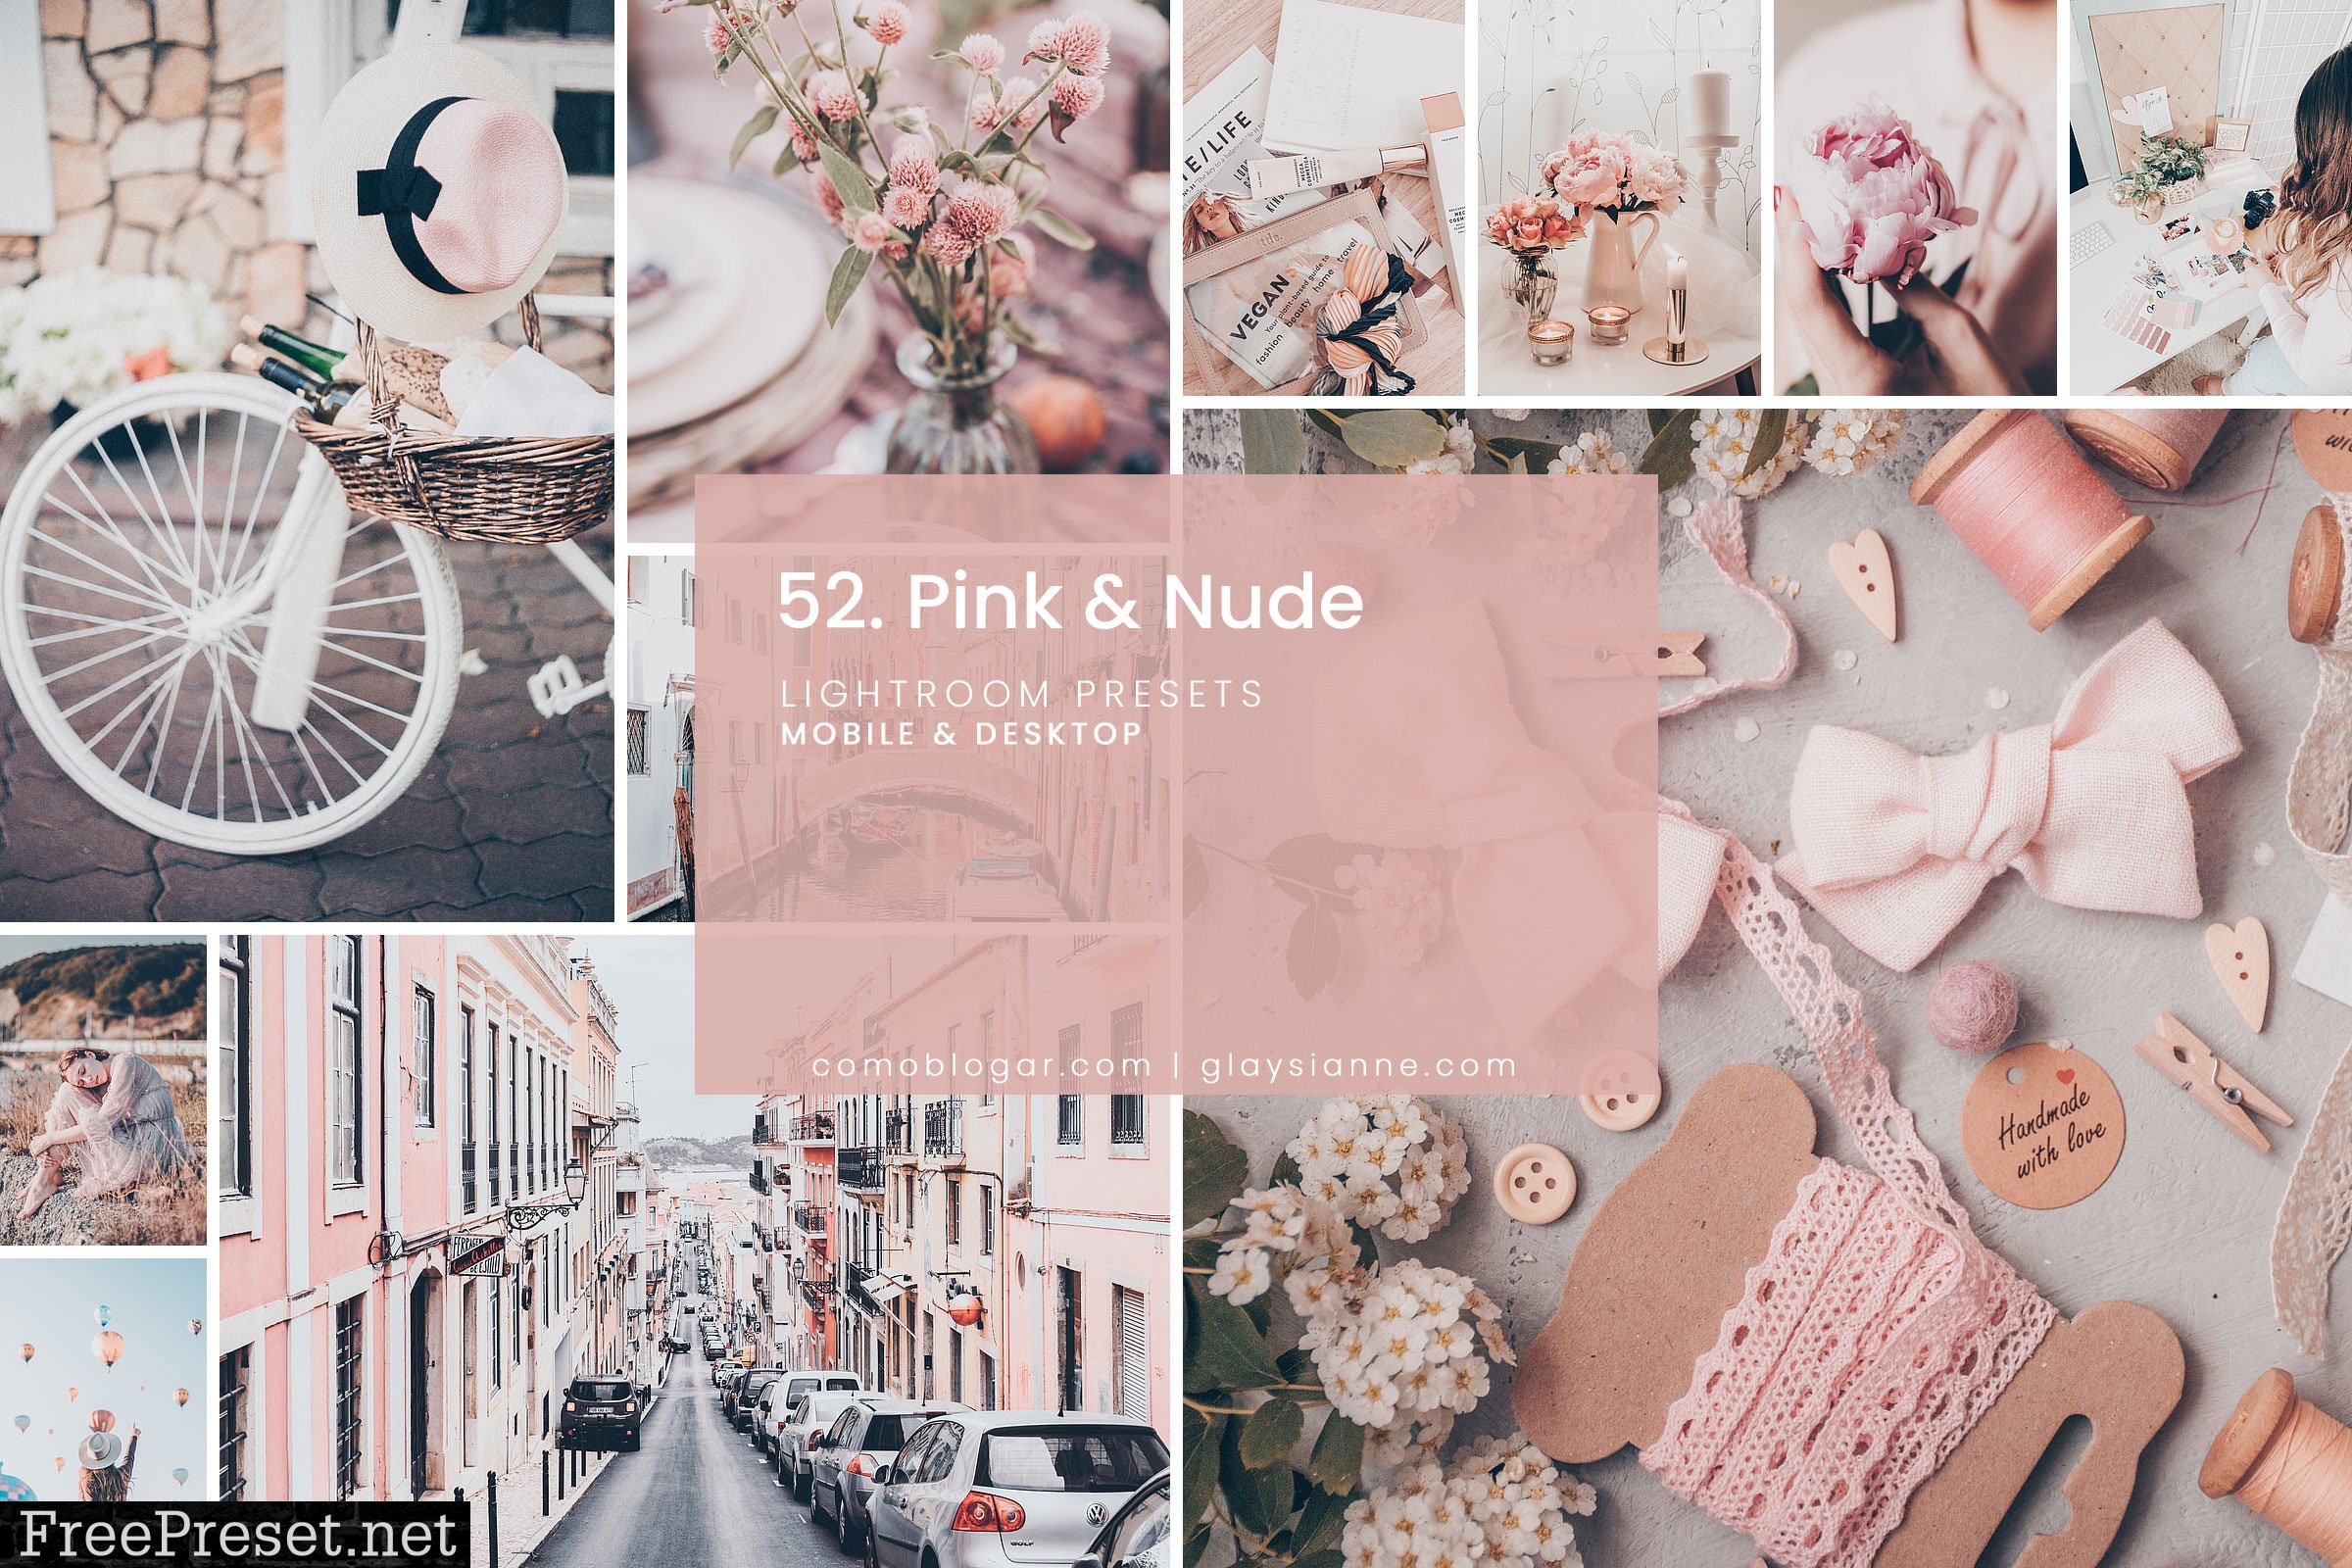 Pink & Nud3